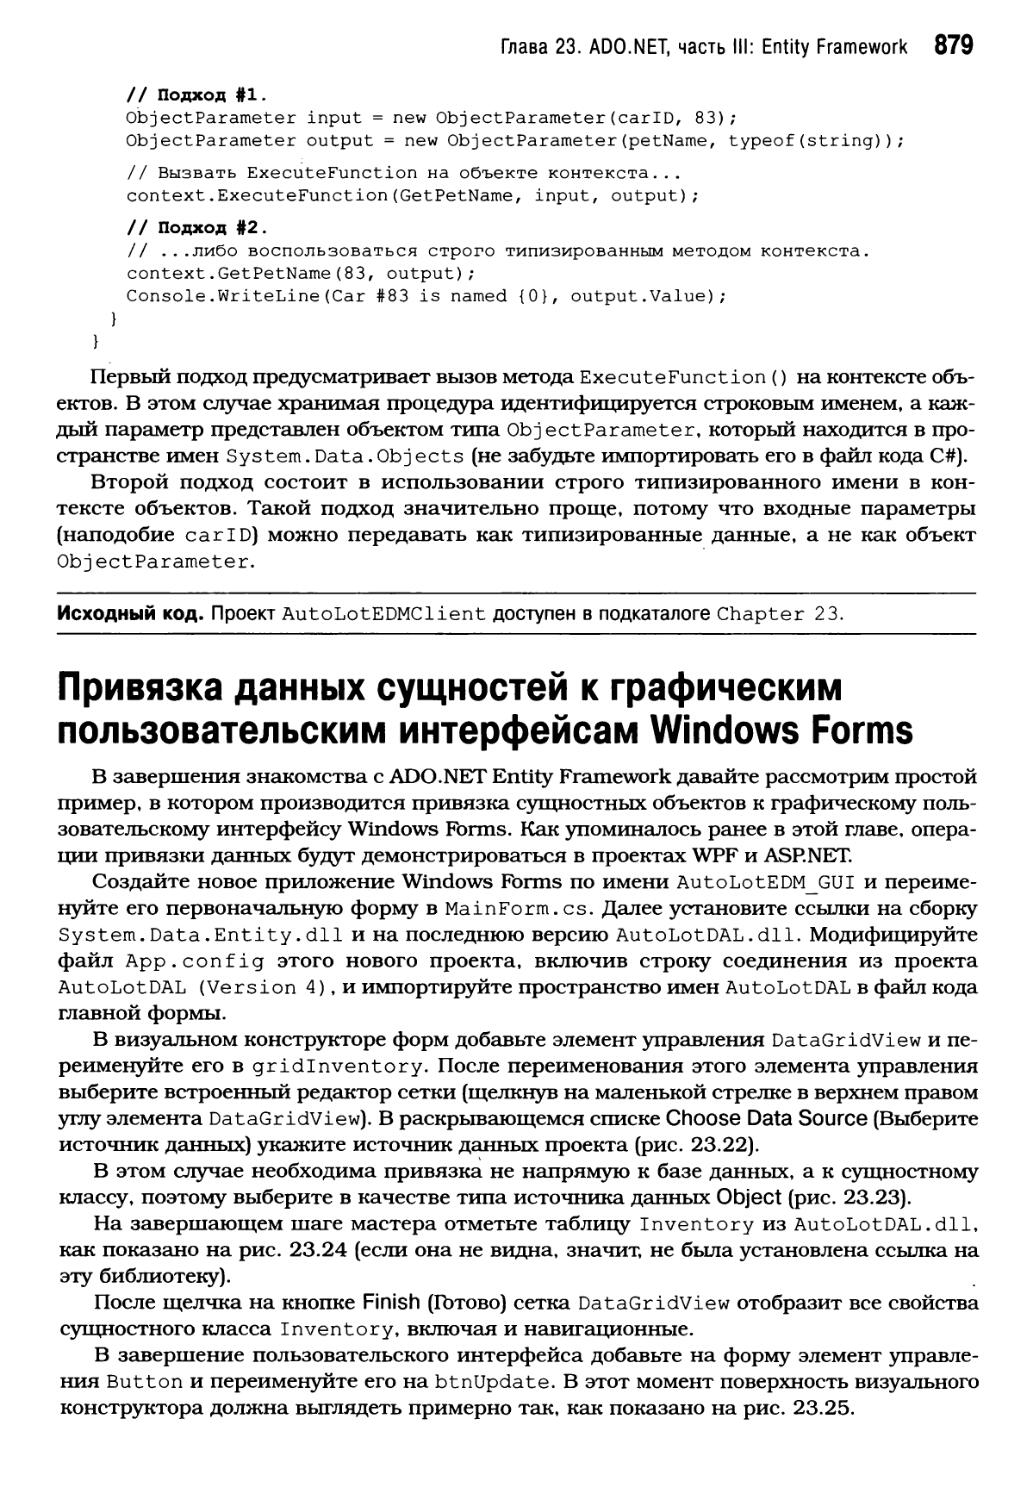 Привязка данных сущностей к графическим пользовательским интерфейсам Windows Forms